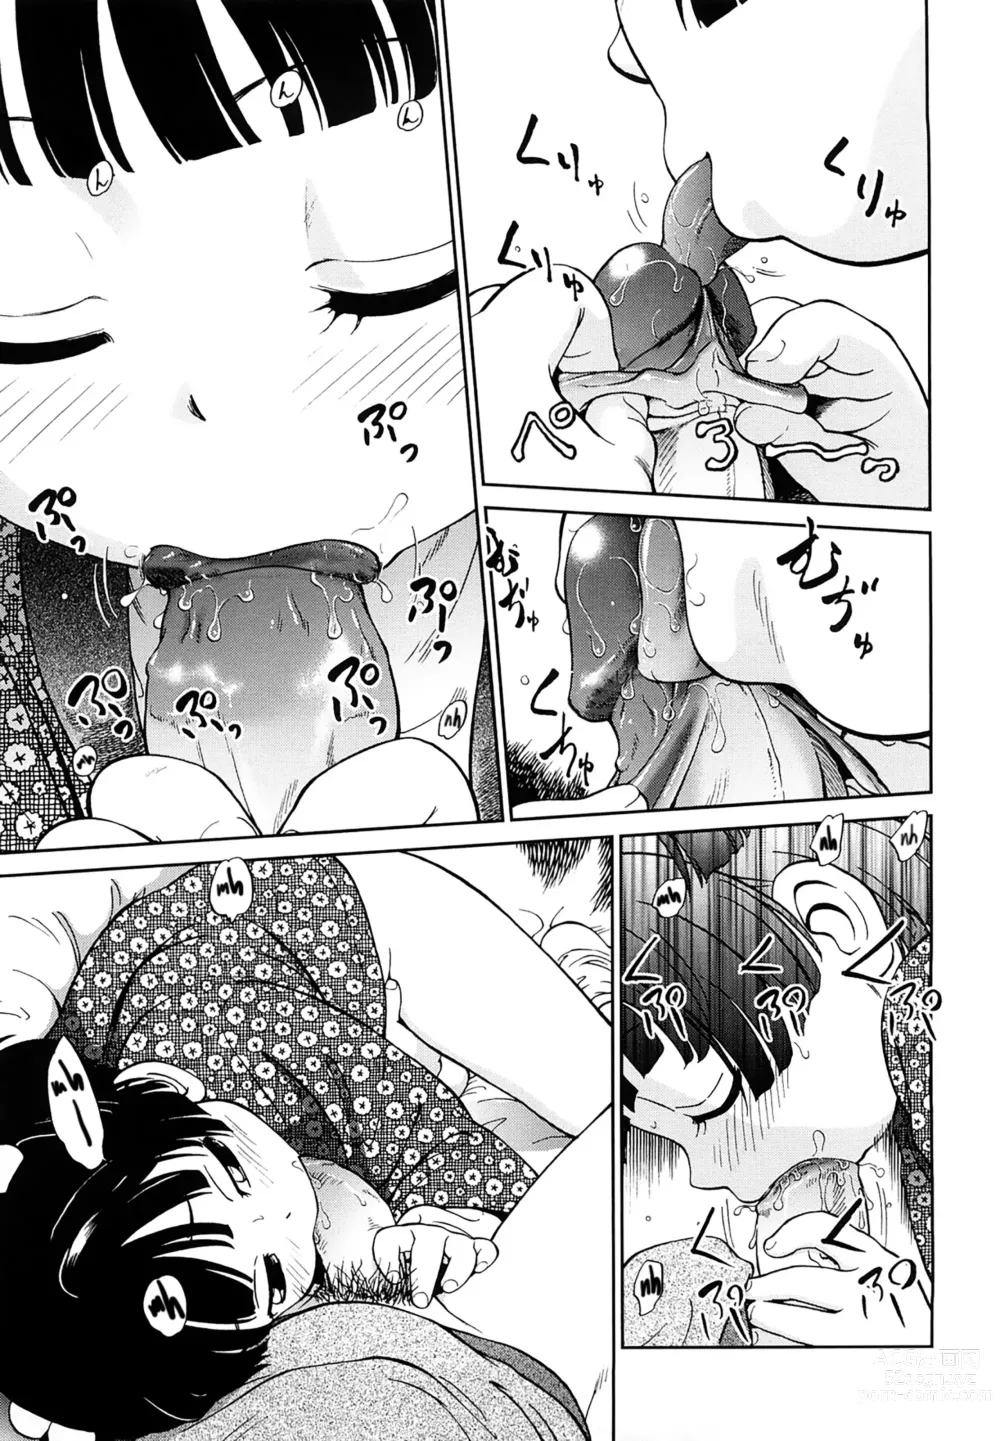 Page 7 of manga 1LDK Hi atari ryoukou warabe tsuki